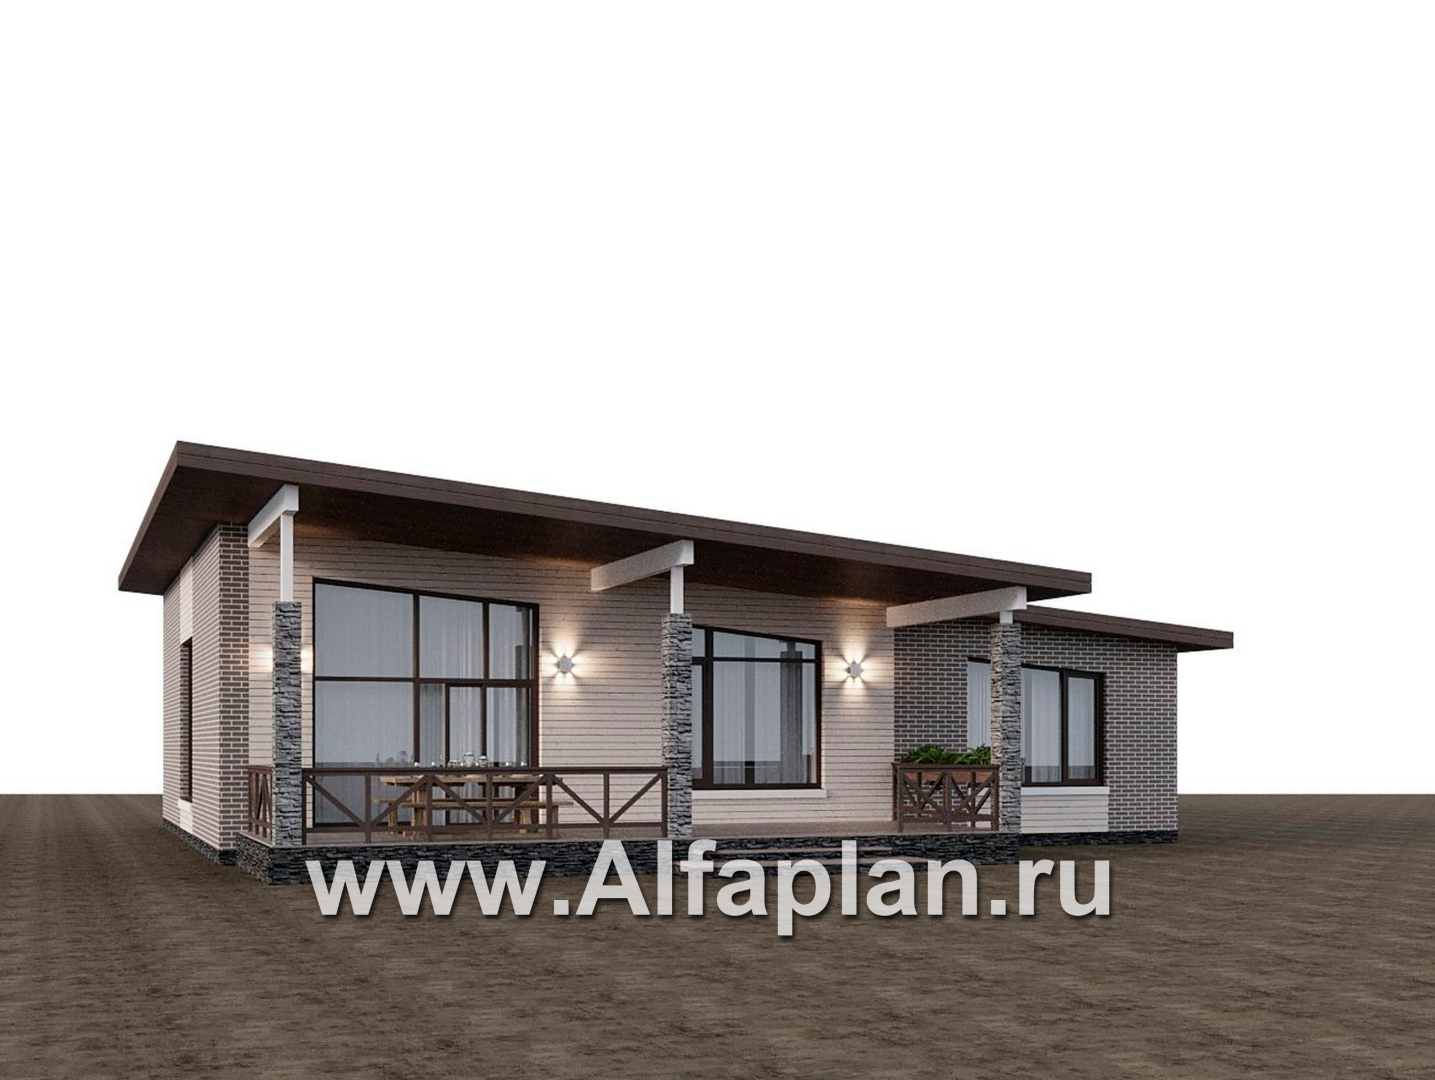 Проекты домов Альфаплан - "Стрелец" -проект газобетонного одноэтажного дома с односкатной крышей - дополнительное изображение №6